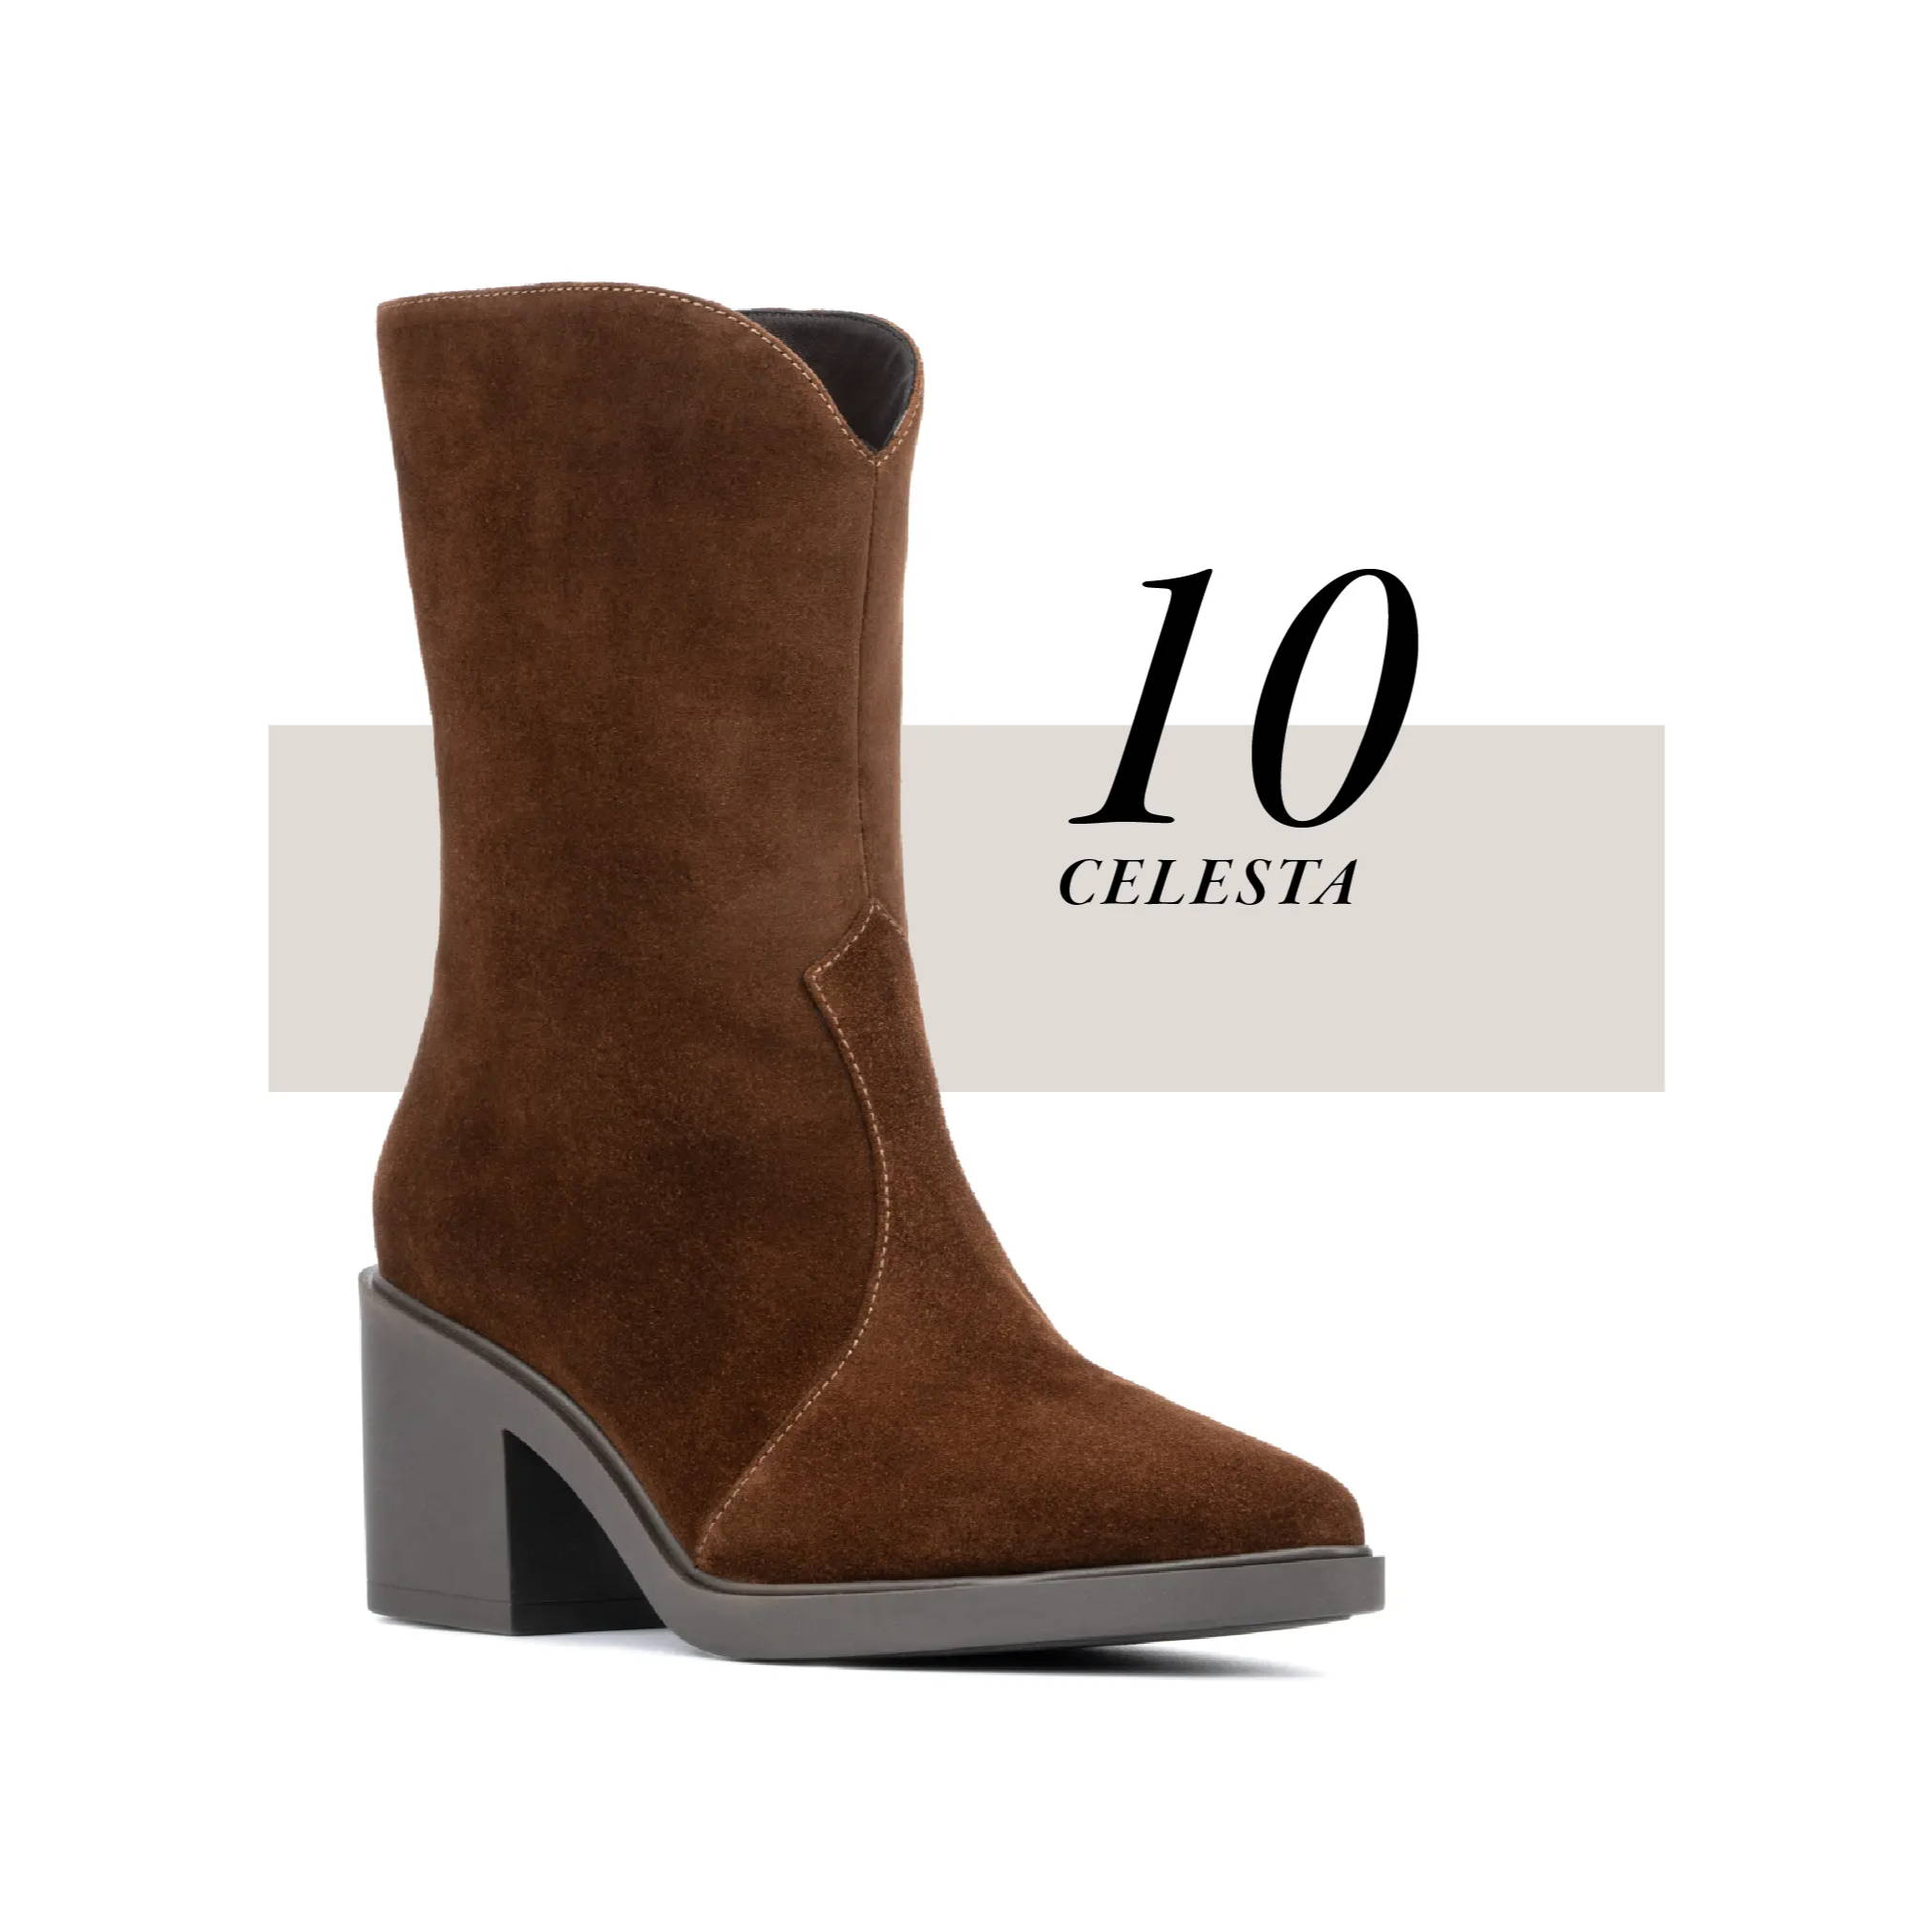 10: The Celesta boot in Brandy